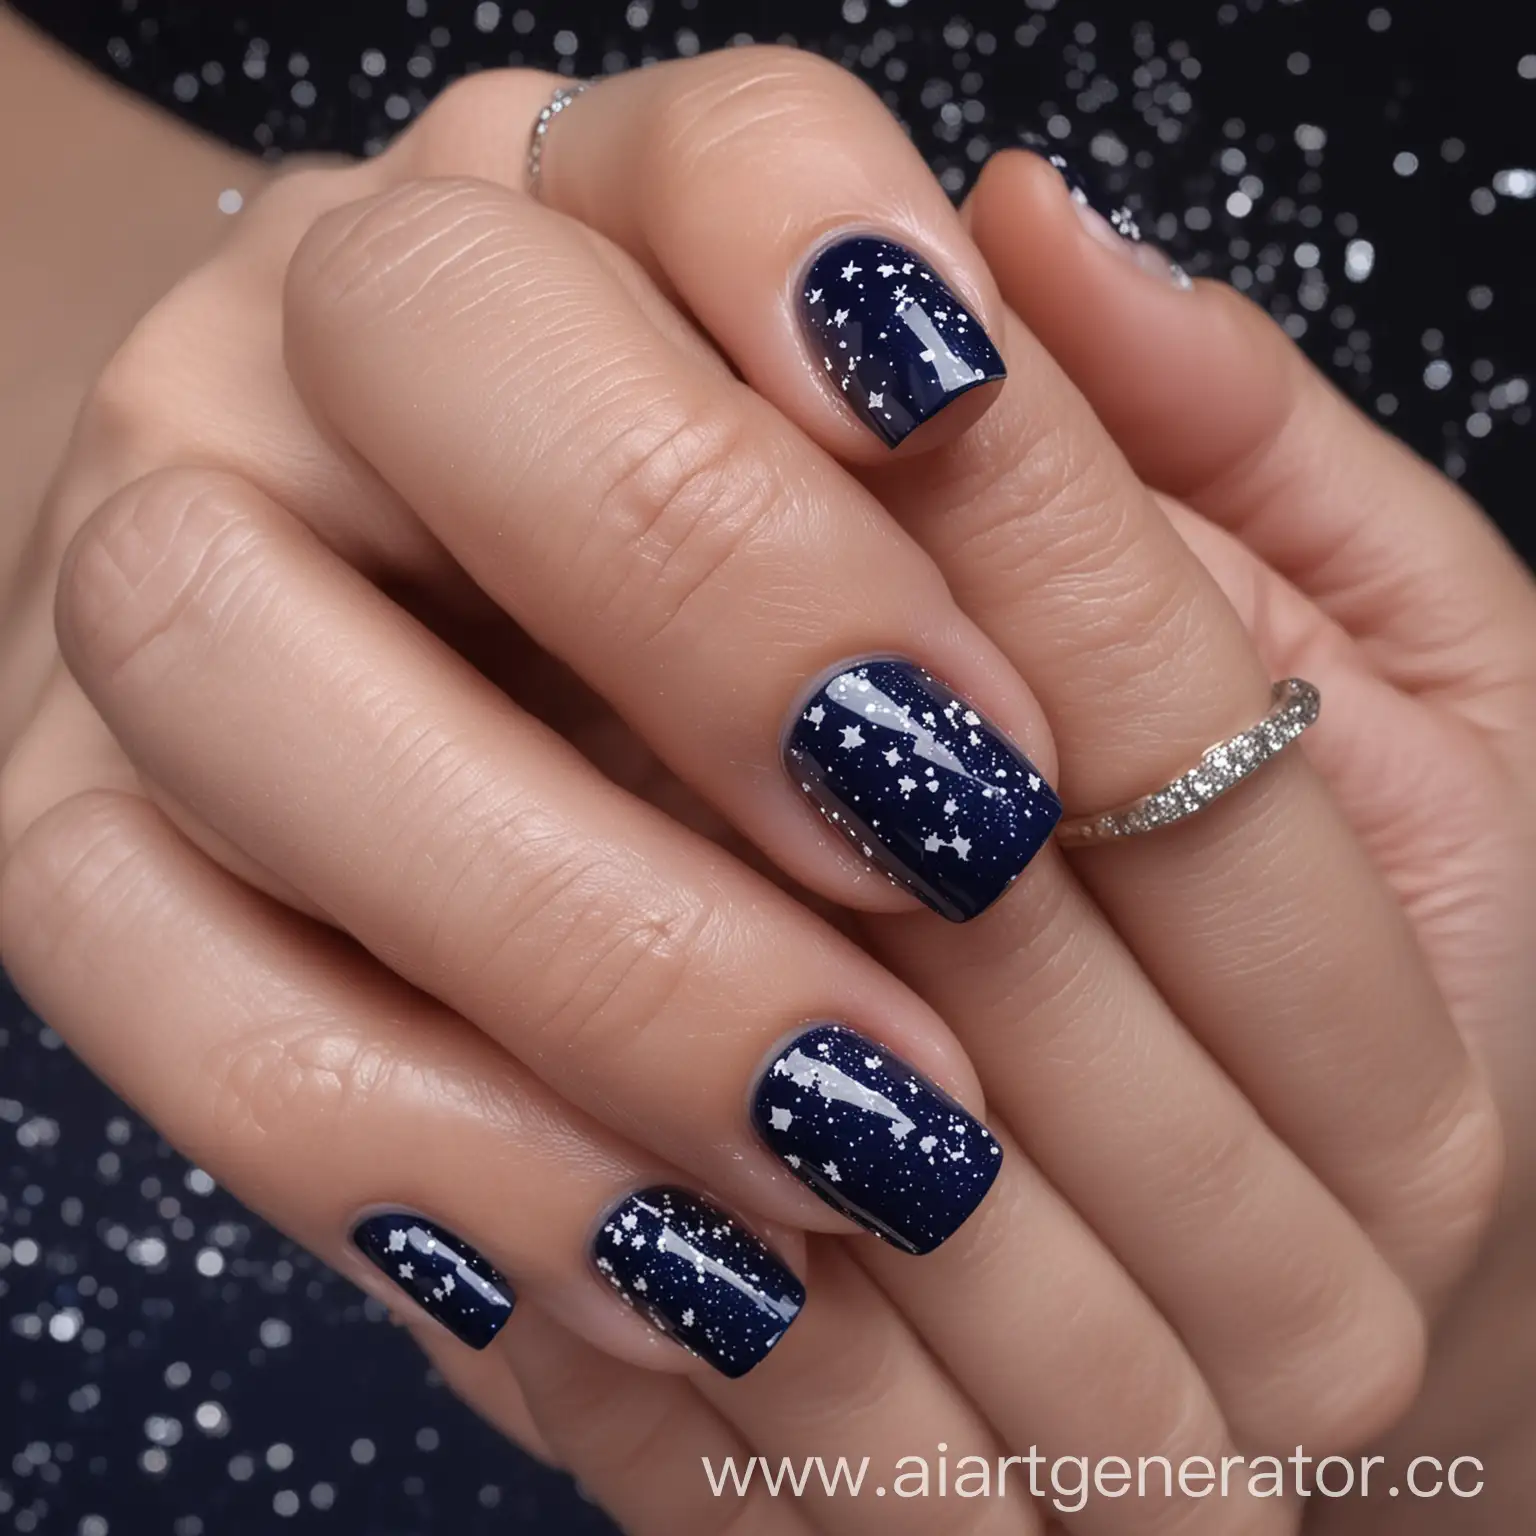 Ногти средней длины, покрашенные тёмно-синим лаком с мелкими блёстками и белыми узорами в виде созвездий
